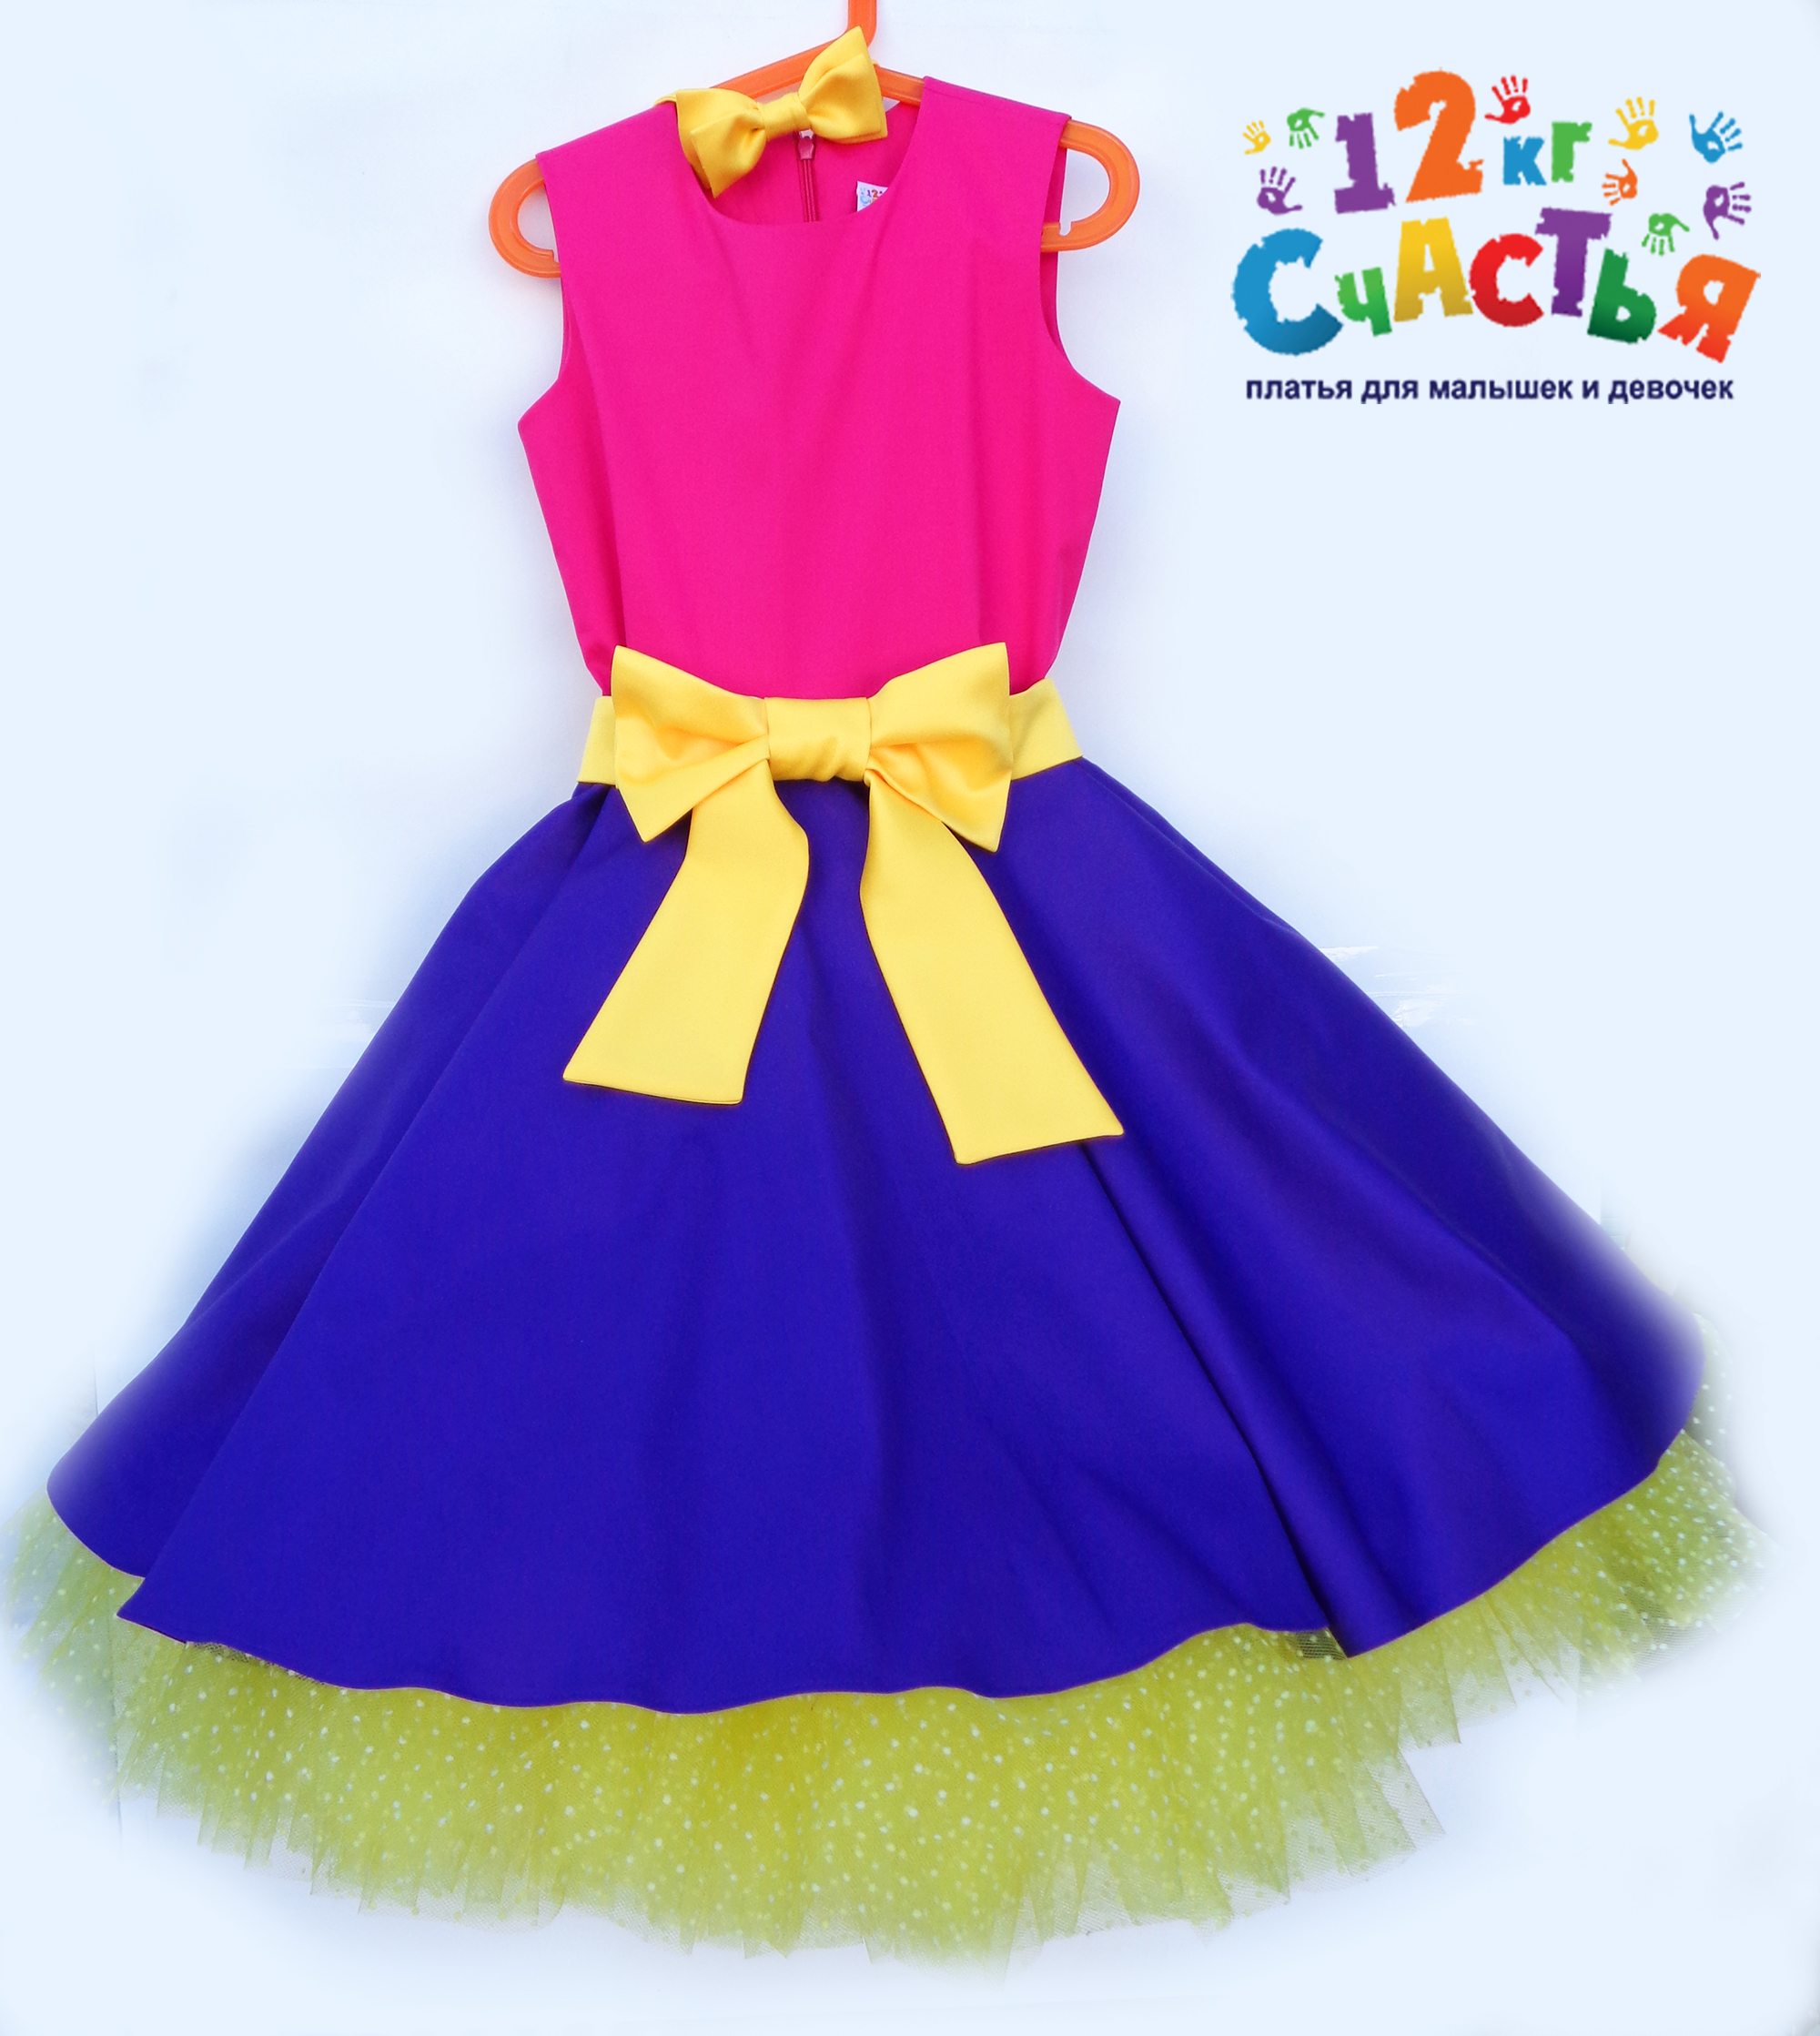 Платье для девочки "Стиляги (розово-фиолетовое)" — нарядные детские платья для девочек | Интернет-магазин платьев для девочек «12 кг Счастья»